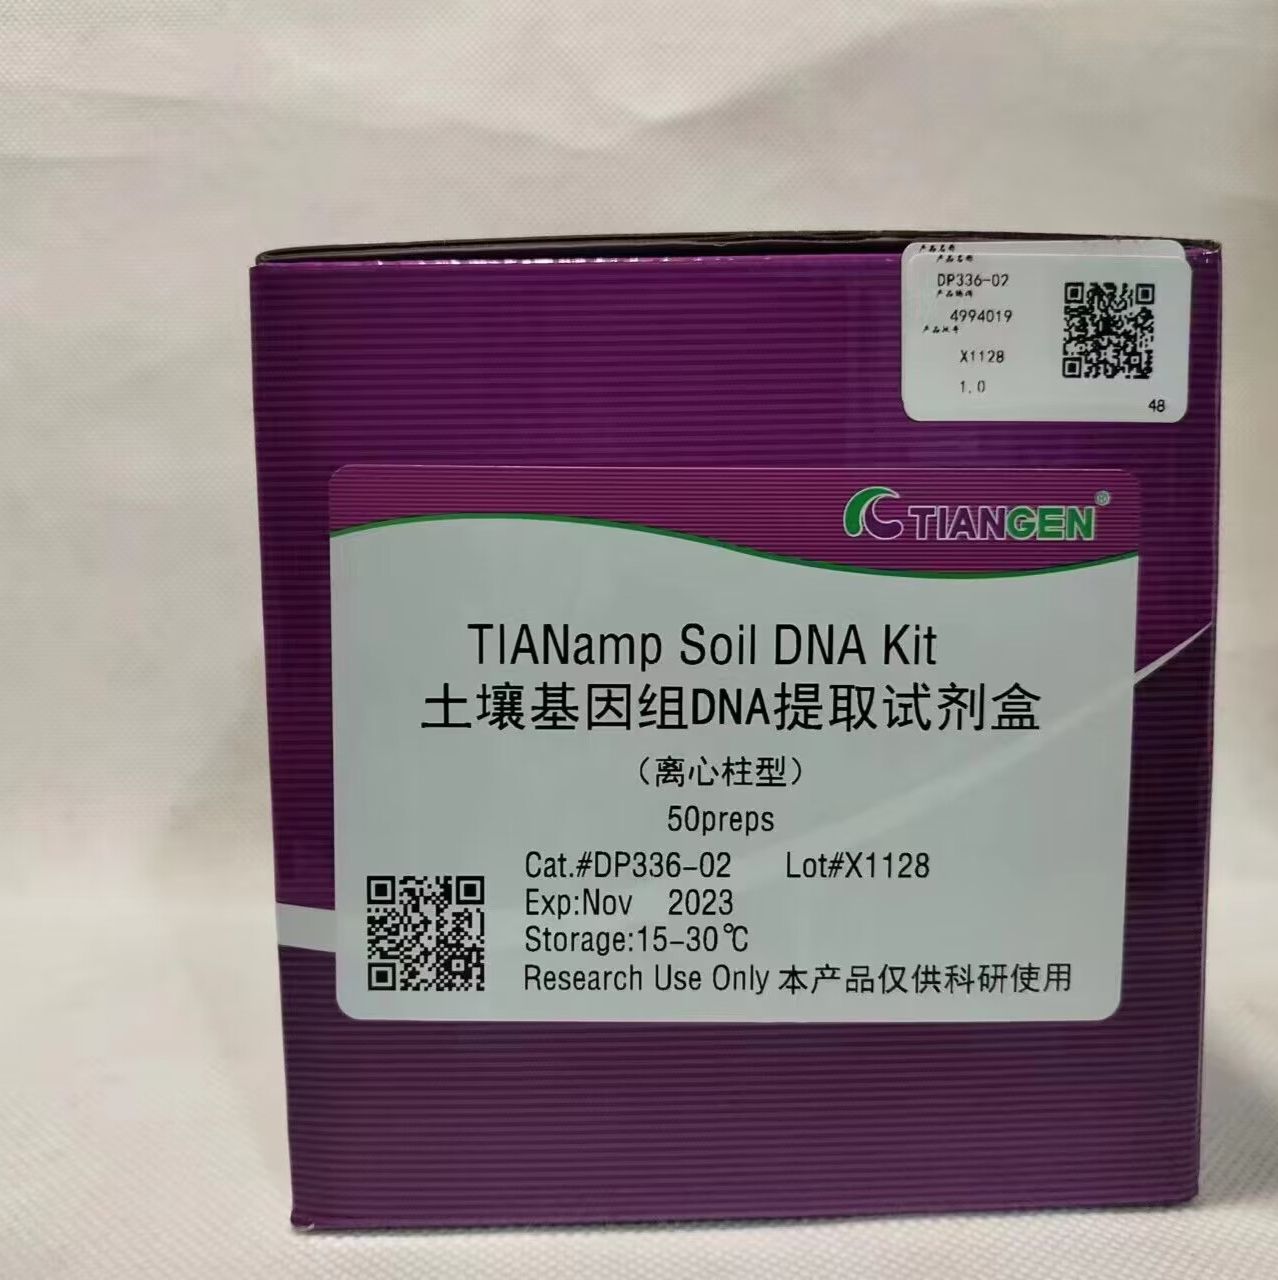 TIANGEN DP336-02土壤基因组DNA提取试剂盒(离心柱型)